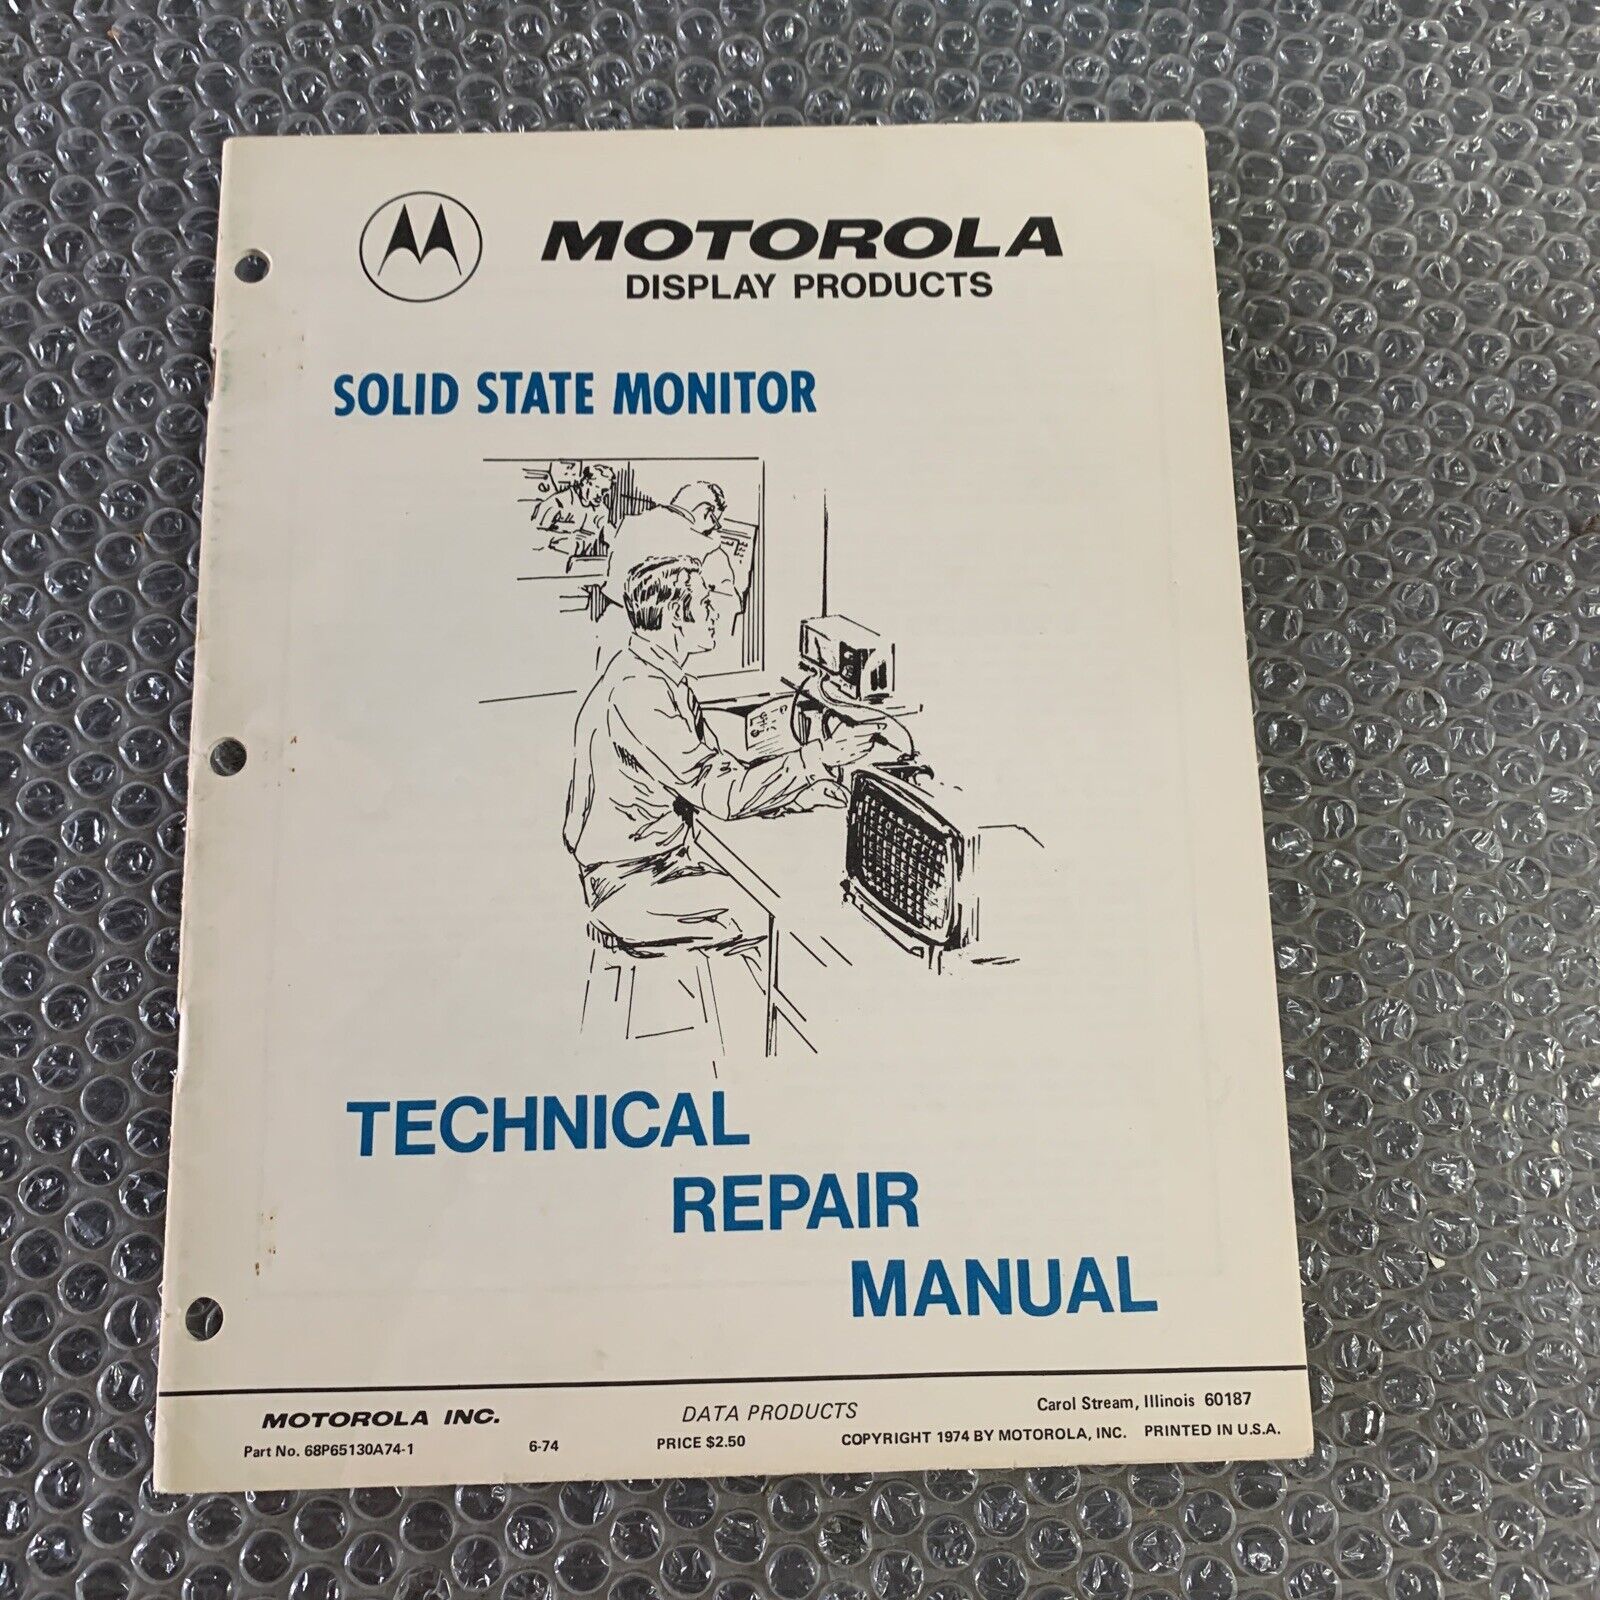 Original Motorola Solid State Repair Monitor arcade Video game owners manual